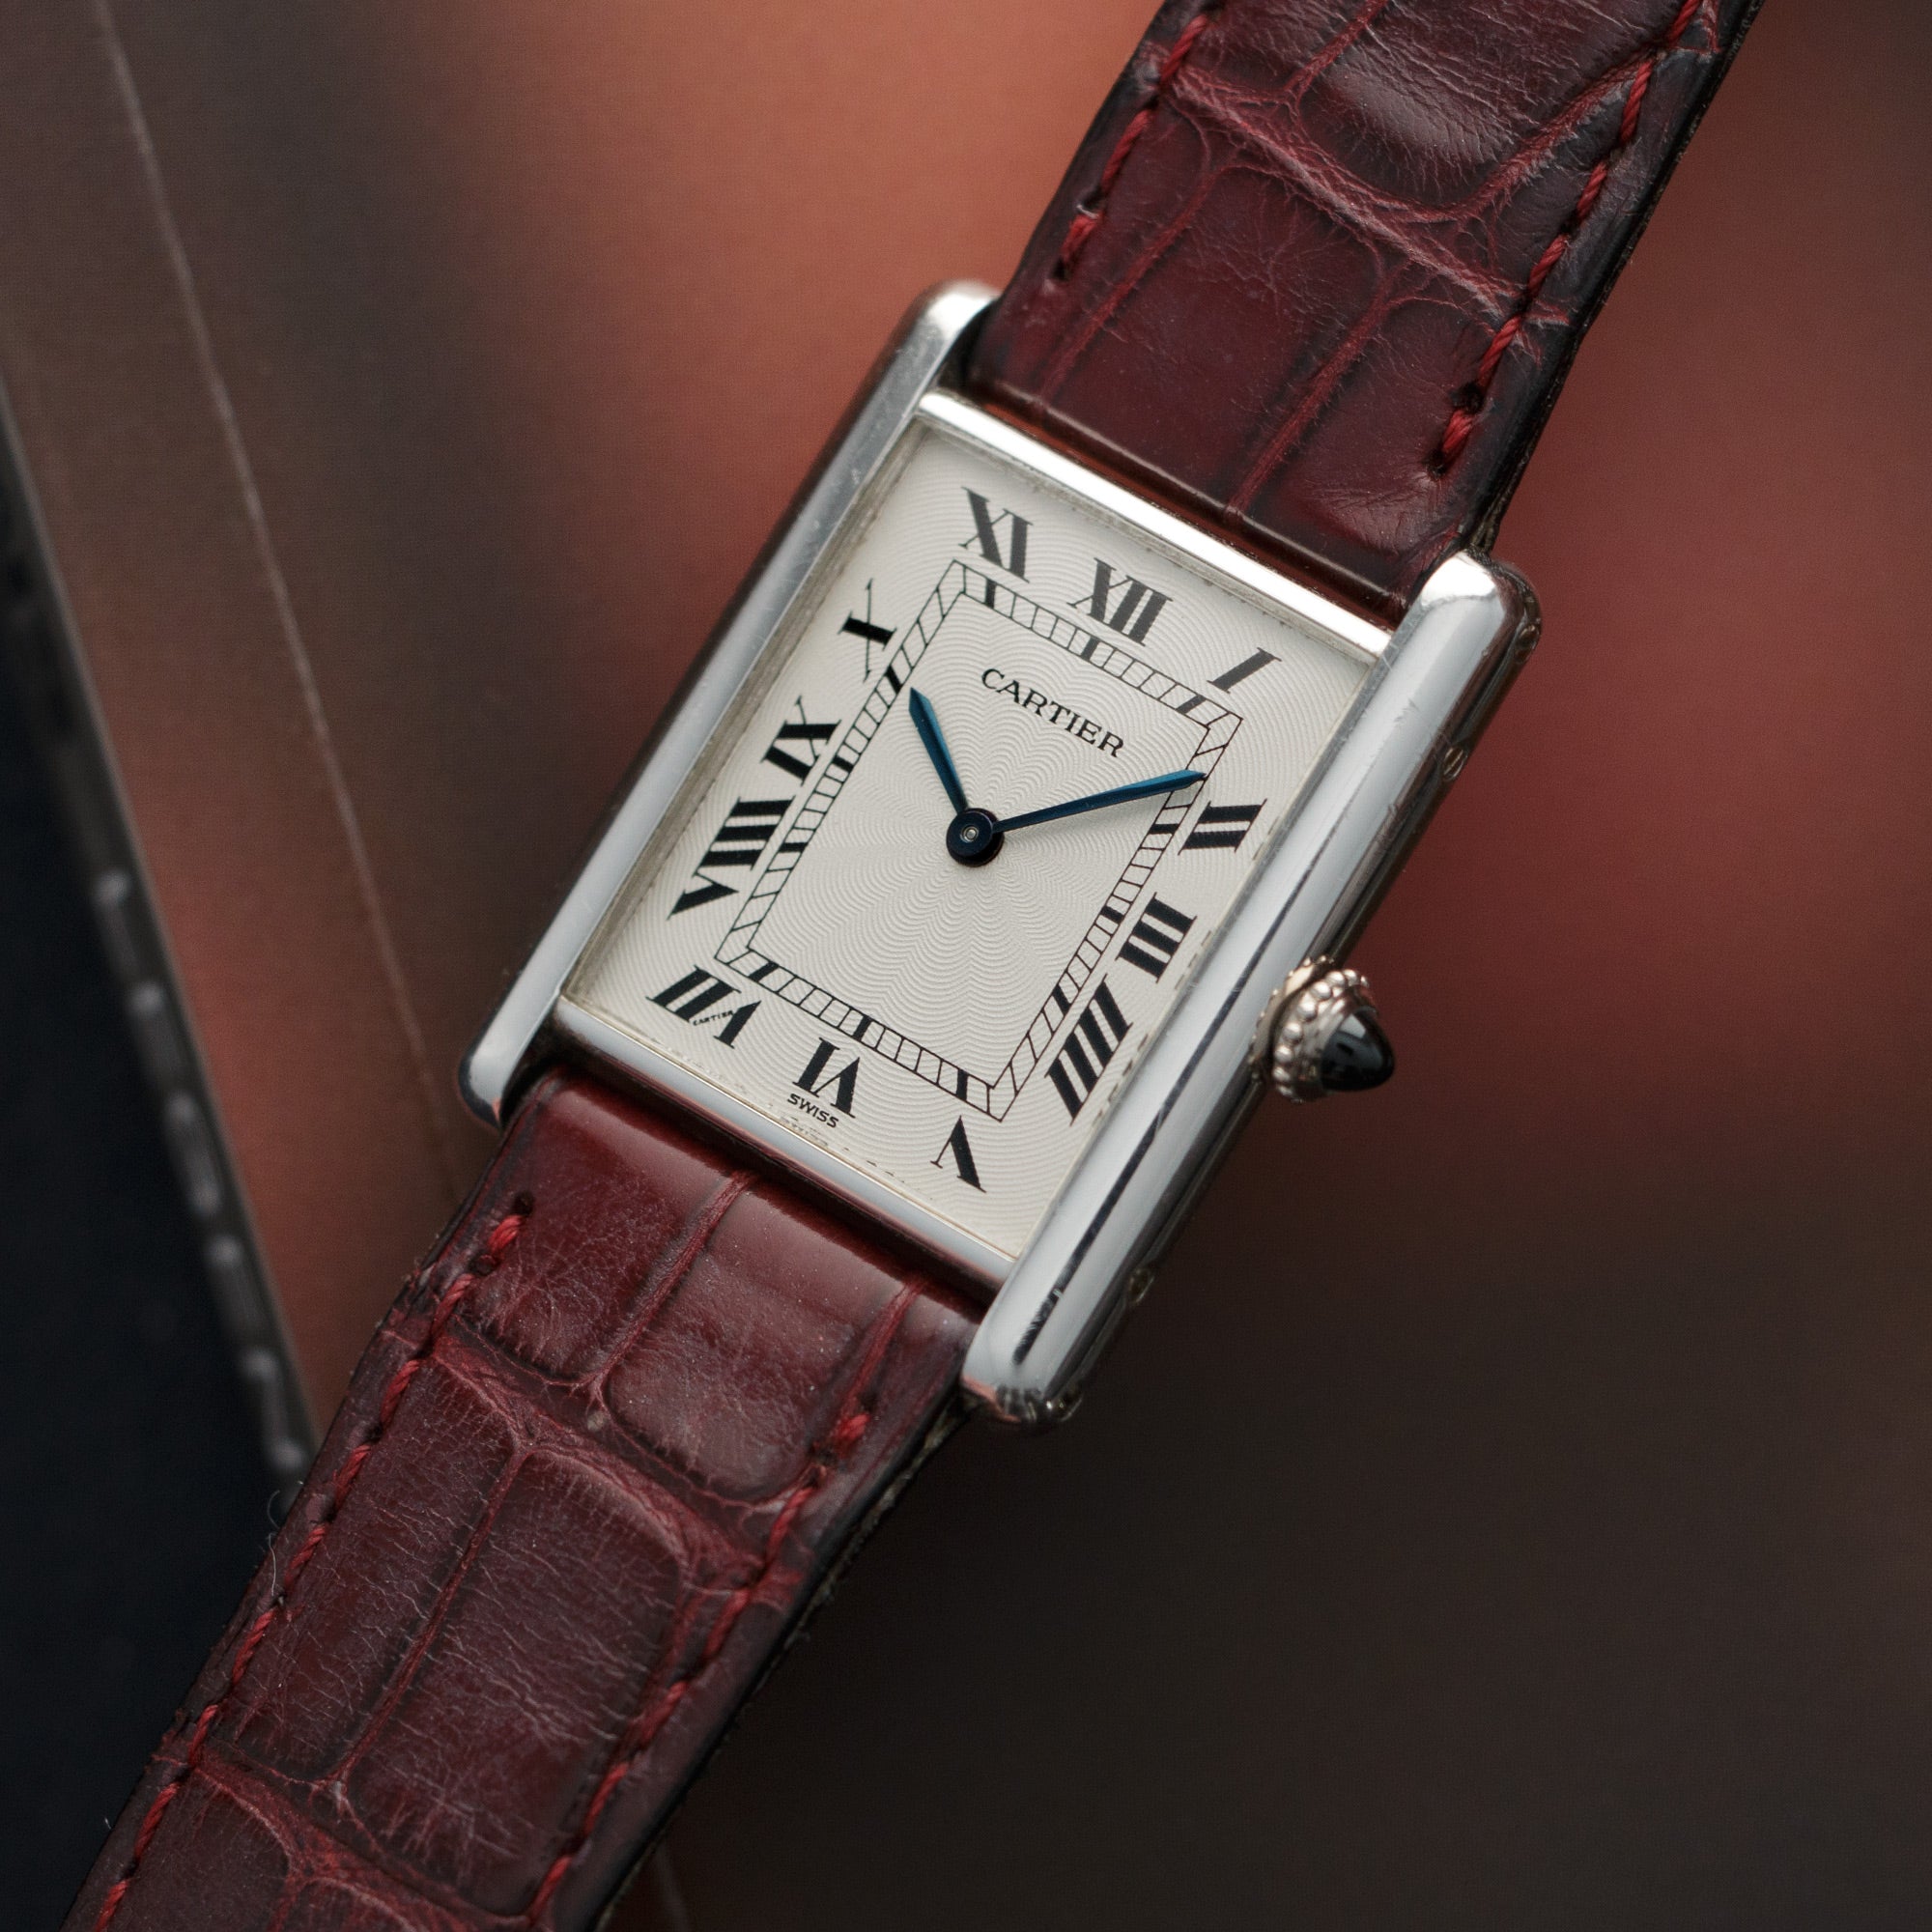 Cartier - Cartier Platinum Tank Mechanical Watch - The Keystone Watches